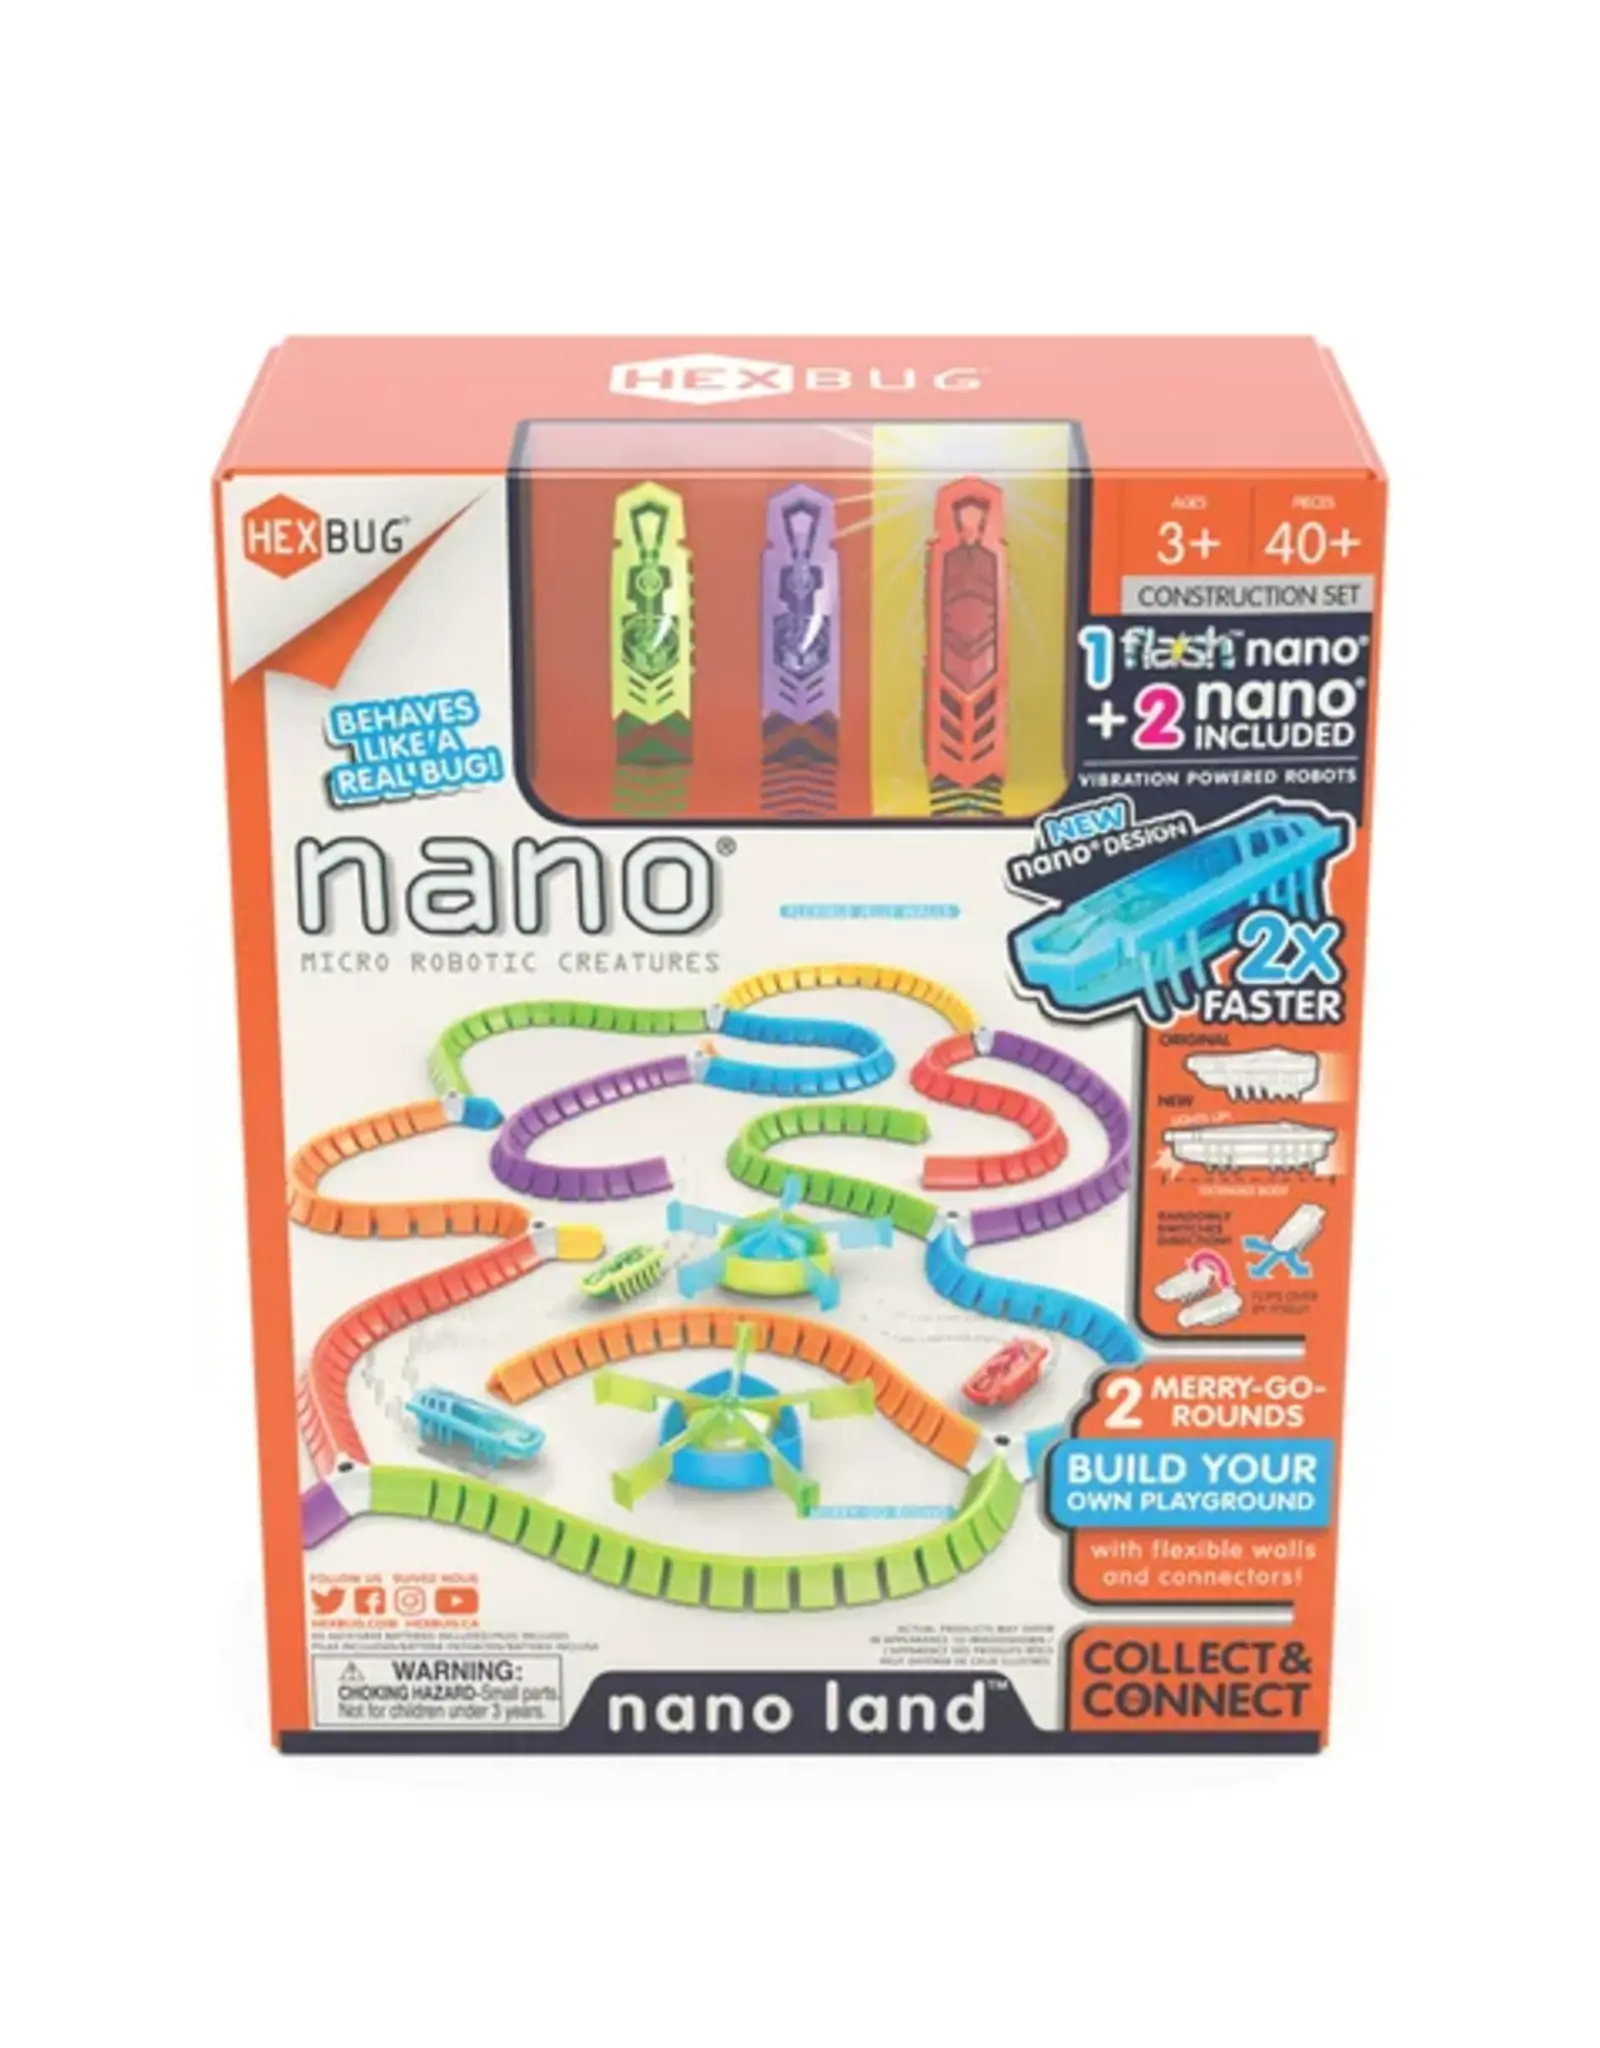 HEXBUG Flash Nano - Nano Land